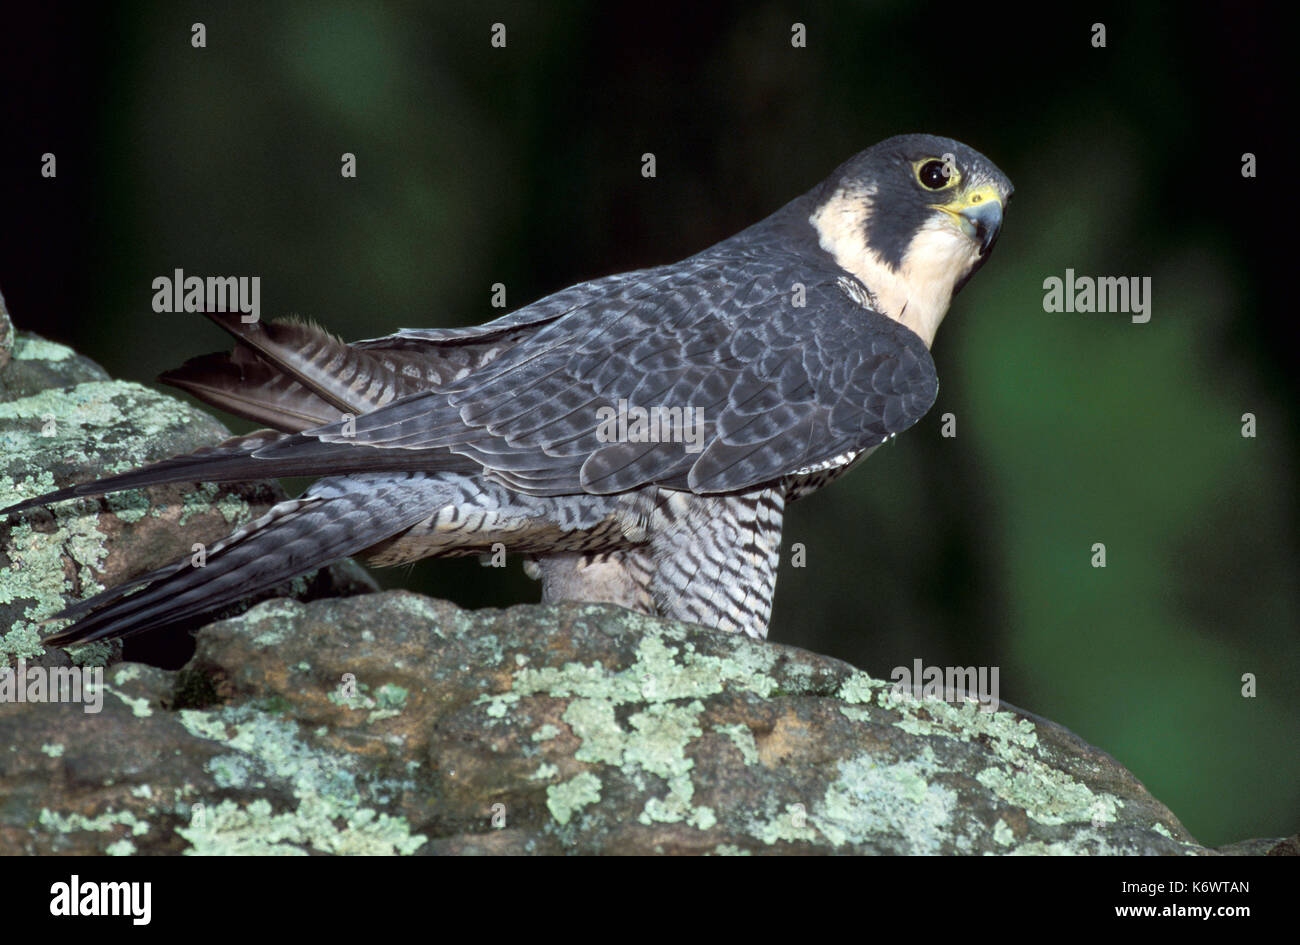 Falco pellegrino, falco peregrinus, sul bordo roccioso, situazione controllata. Foto Stock